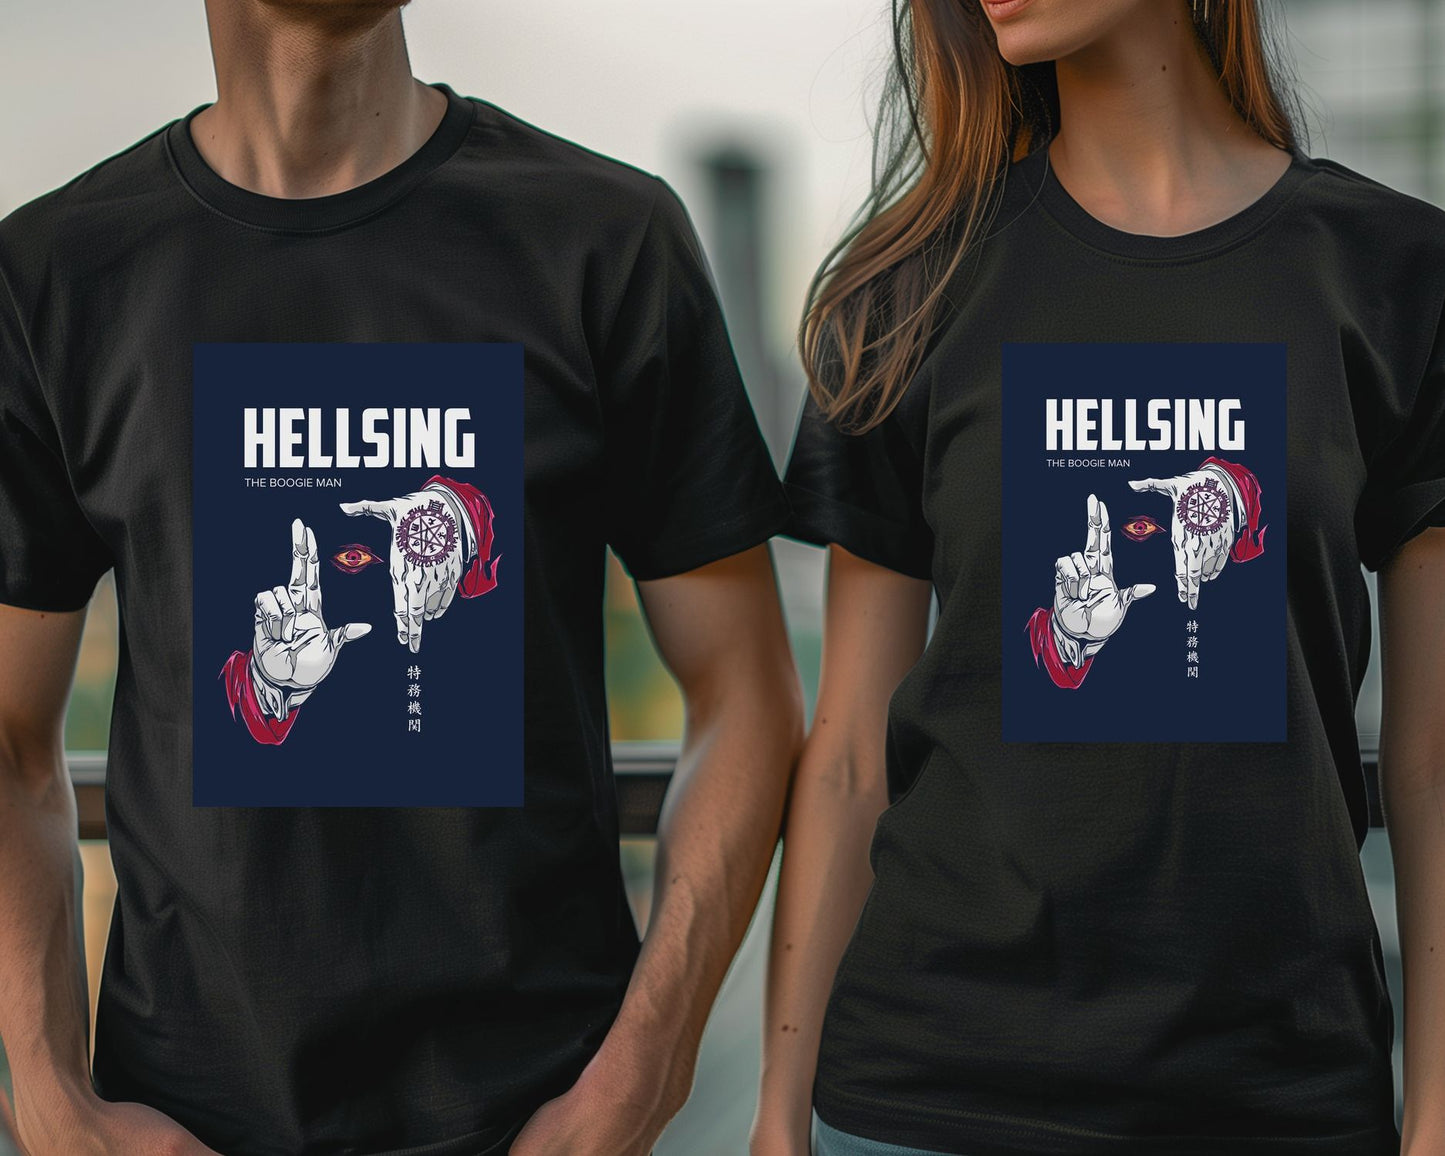 Hellsing - @TokyoRetro